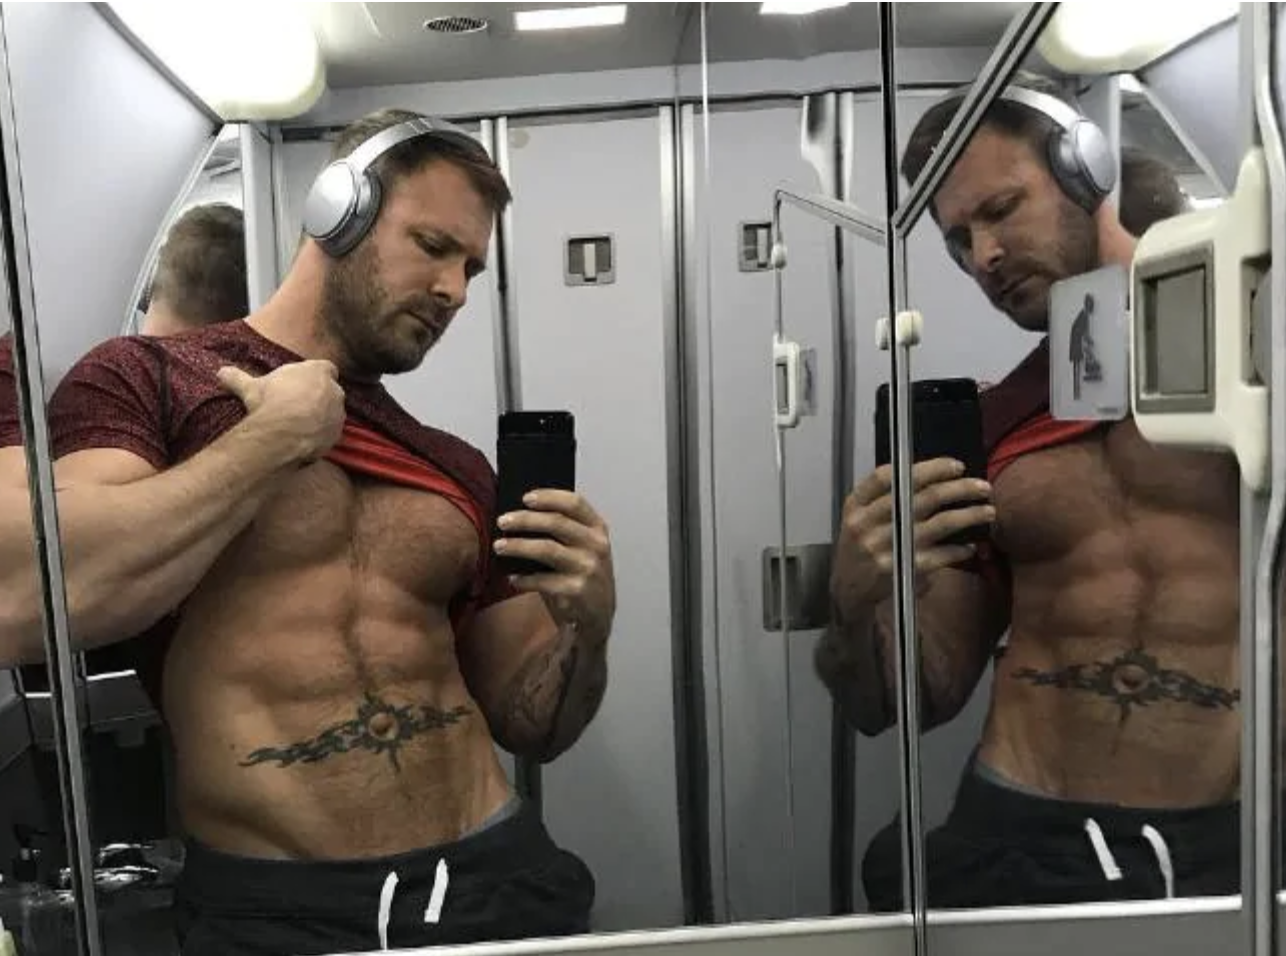 Airplane Bathroom Sex - Delta Flight Attendant Suspended for In-Flight Bathroom Sex ...